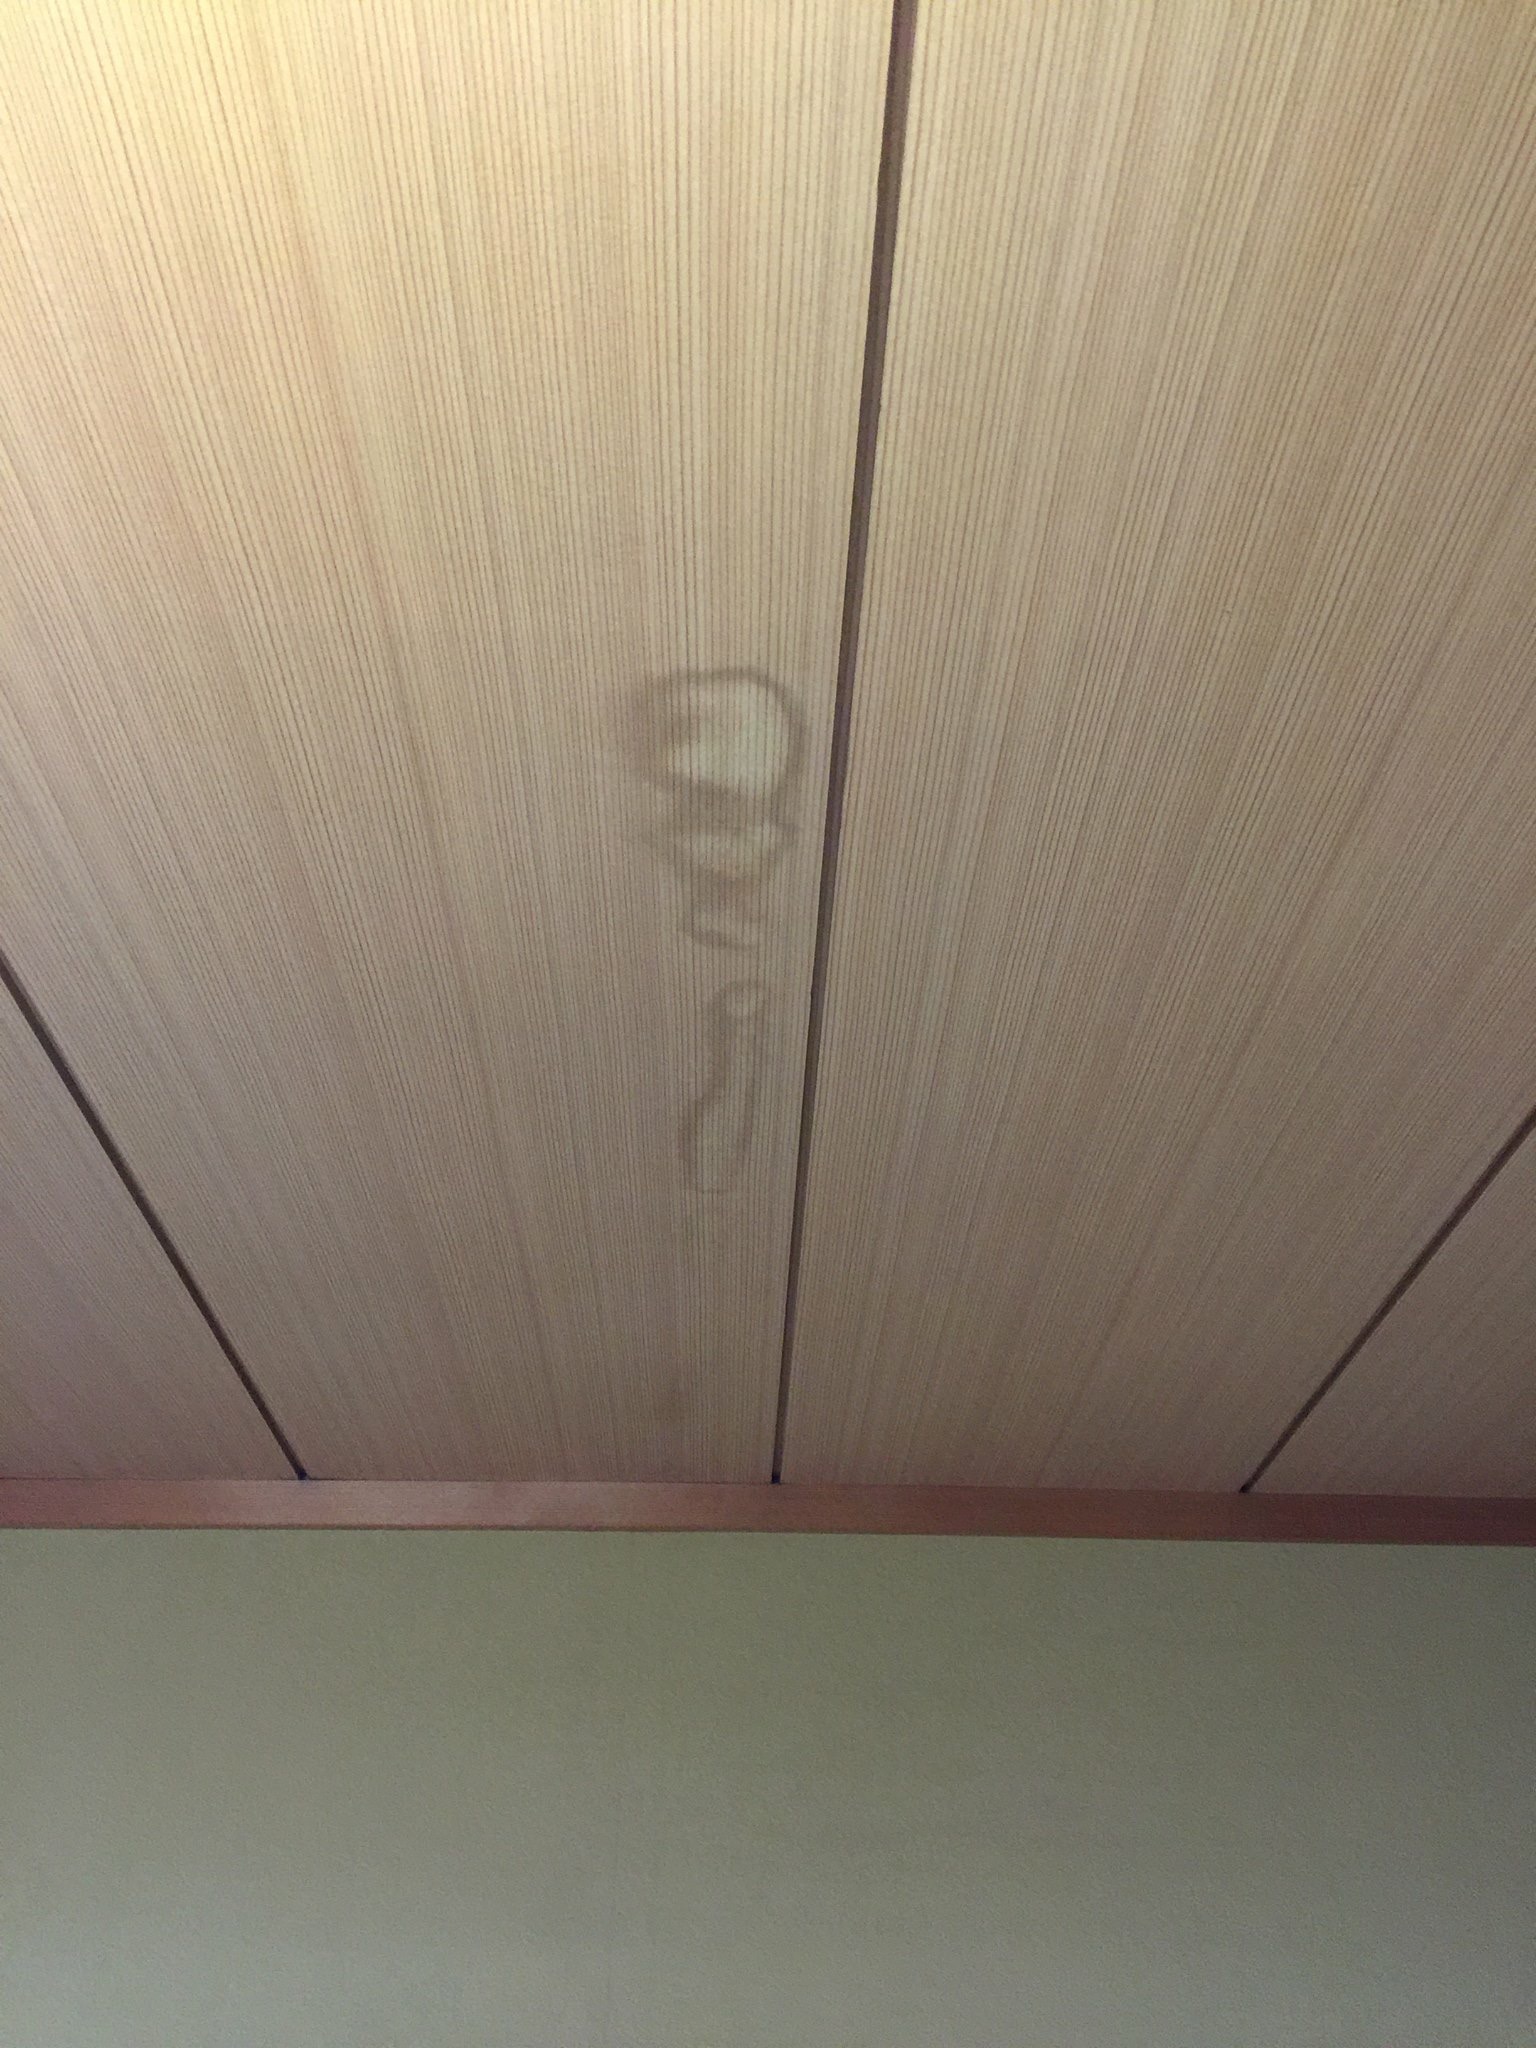 え 天井にシミが なんかいる 大阪府高槻市真上のマツシタデンキ